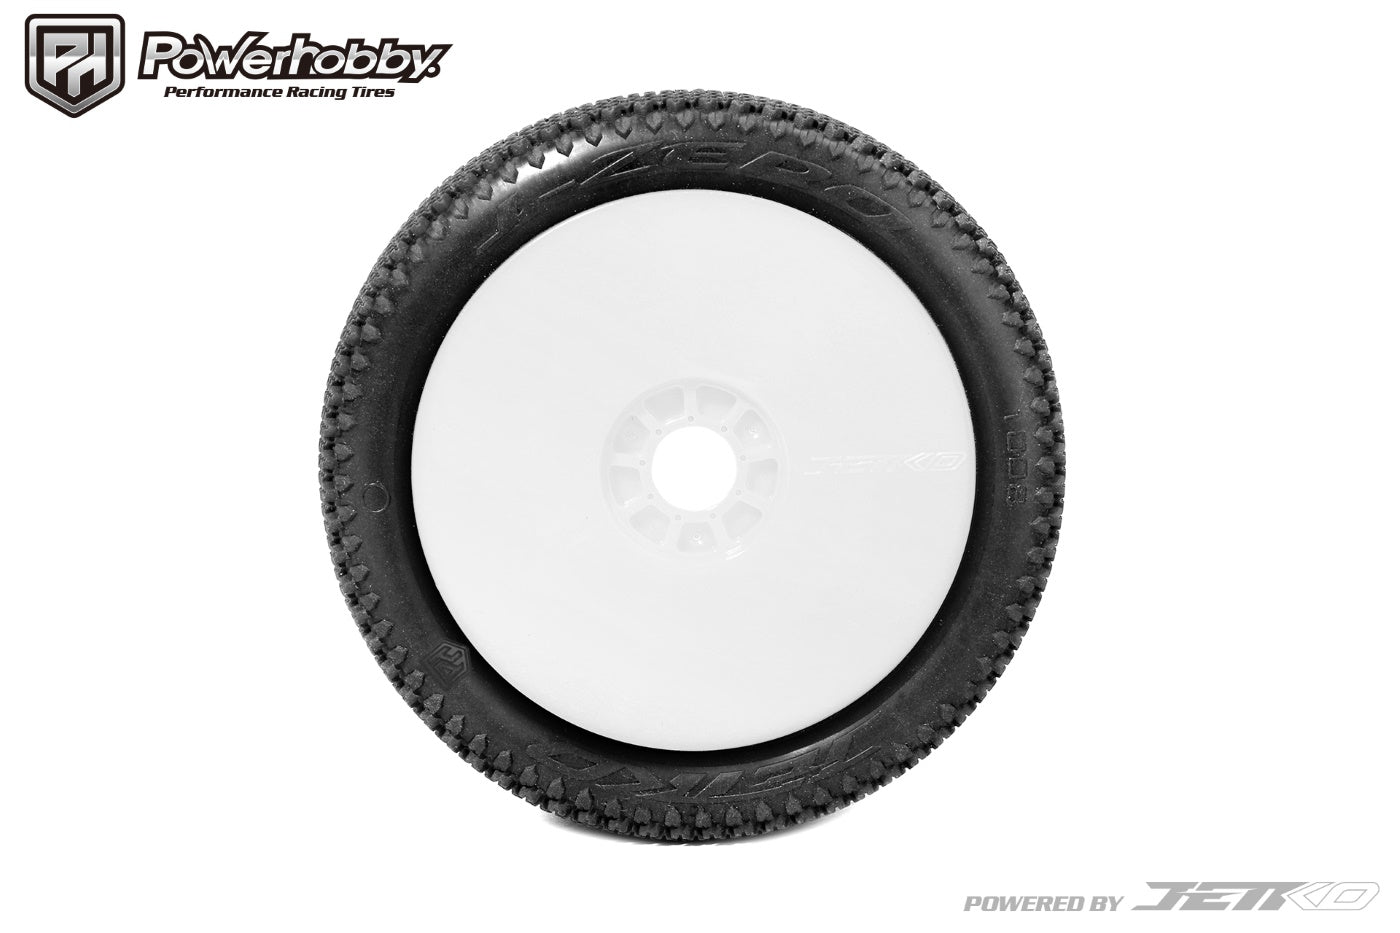 Powerhobby J-Zero 1/8 Buggy Mounted Tires White Dish Wheels (2) Medium Soft - PowerHobby